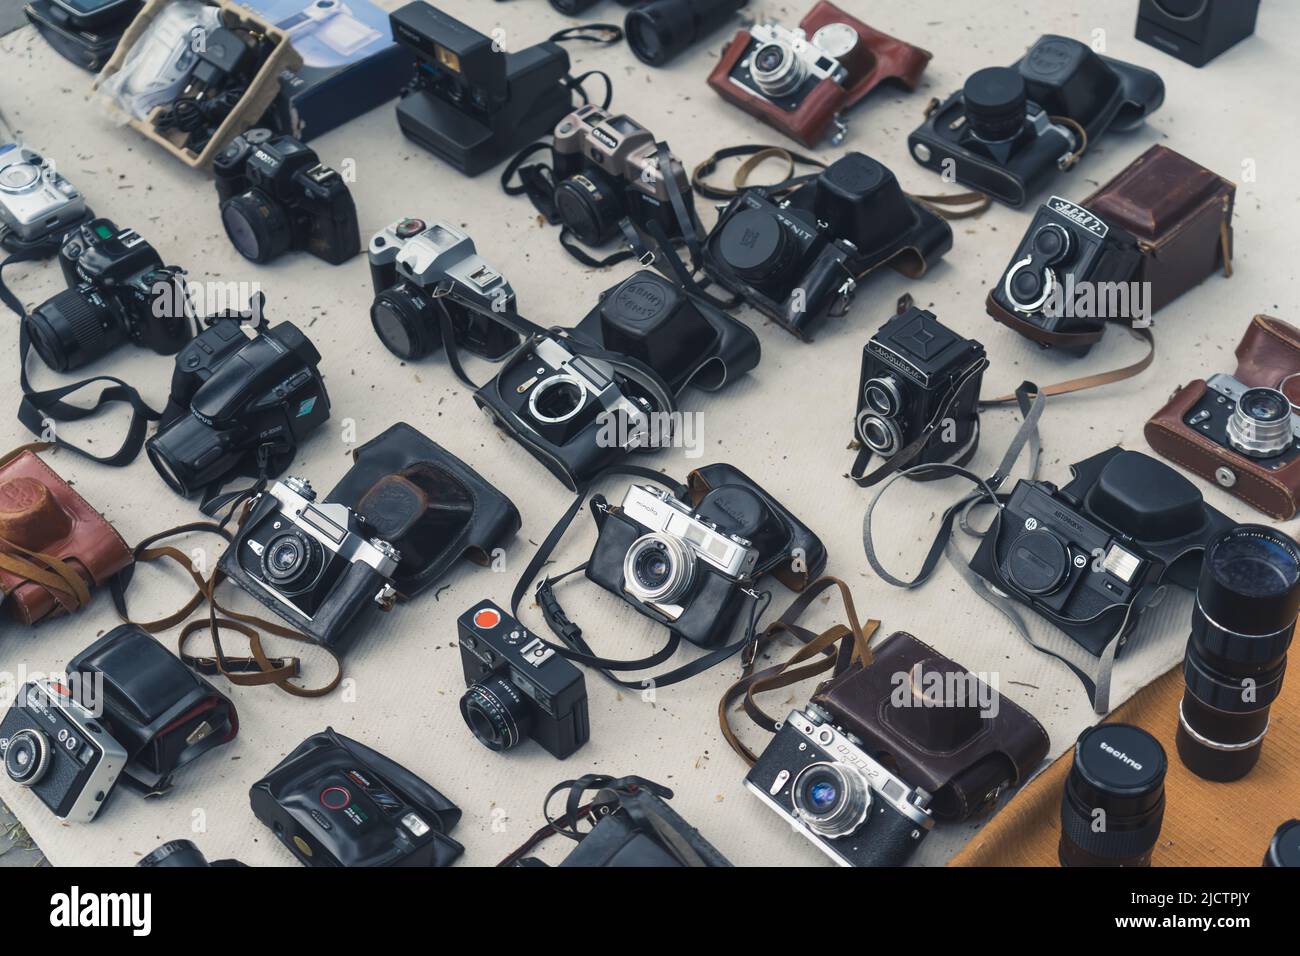 18.05.2022. mostra di vecchie macchine fotografiche d'epoca al mercato delle pulci. Foto di alta qualità Foto Stock